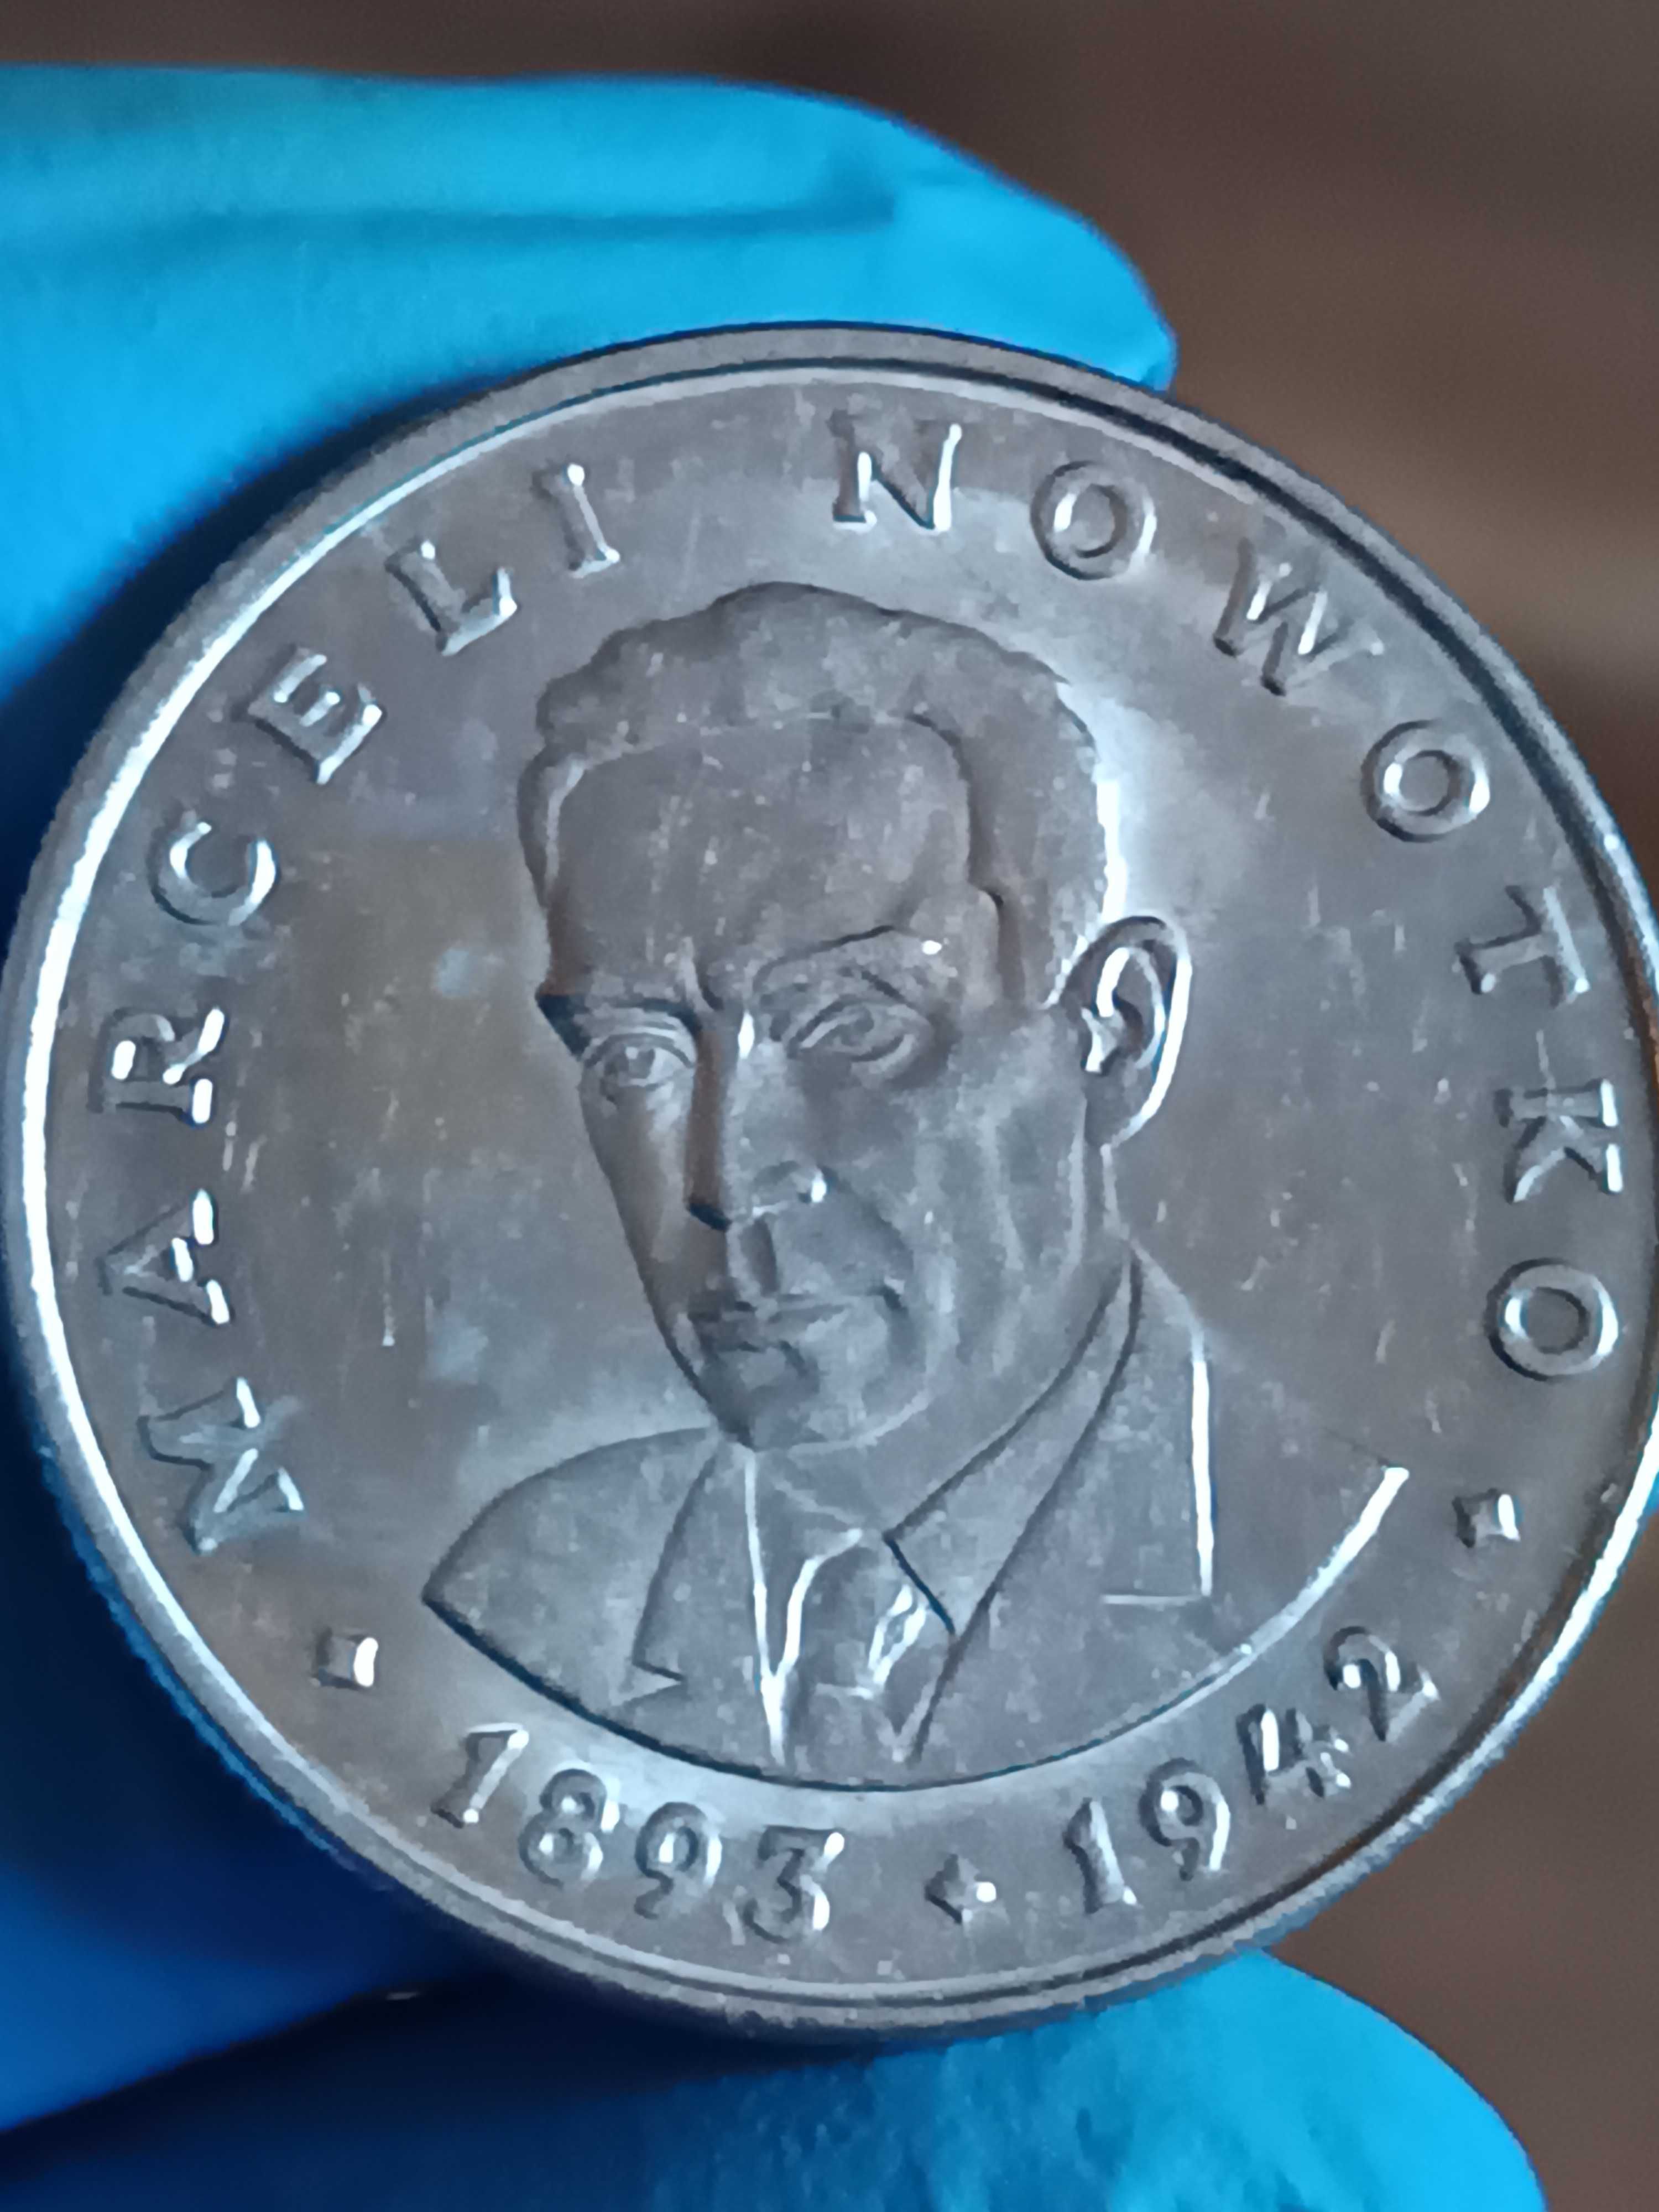 Sprzedam monetę 20 zl 1974 r Nowotko Mały Orzeł